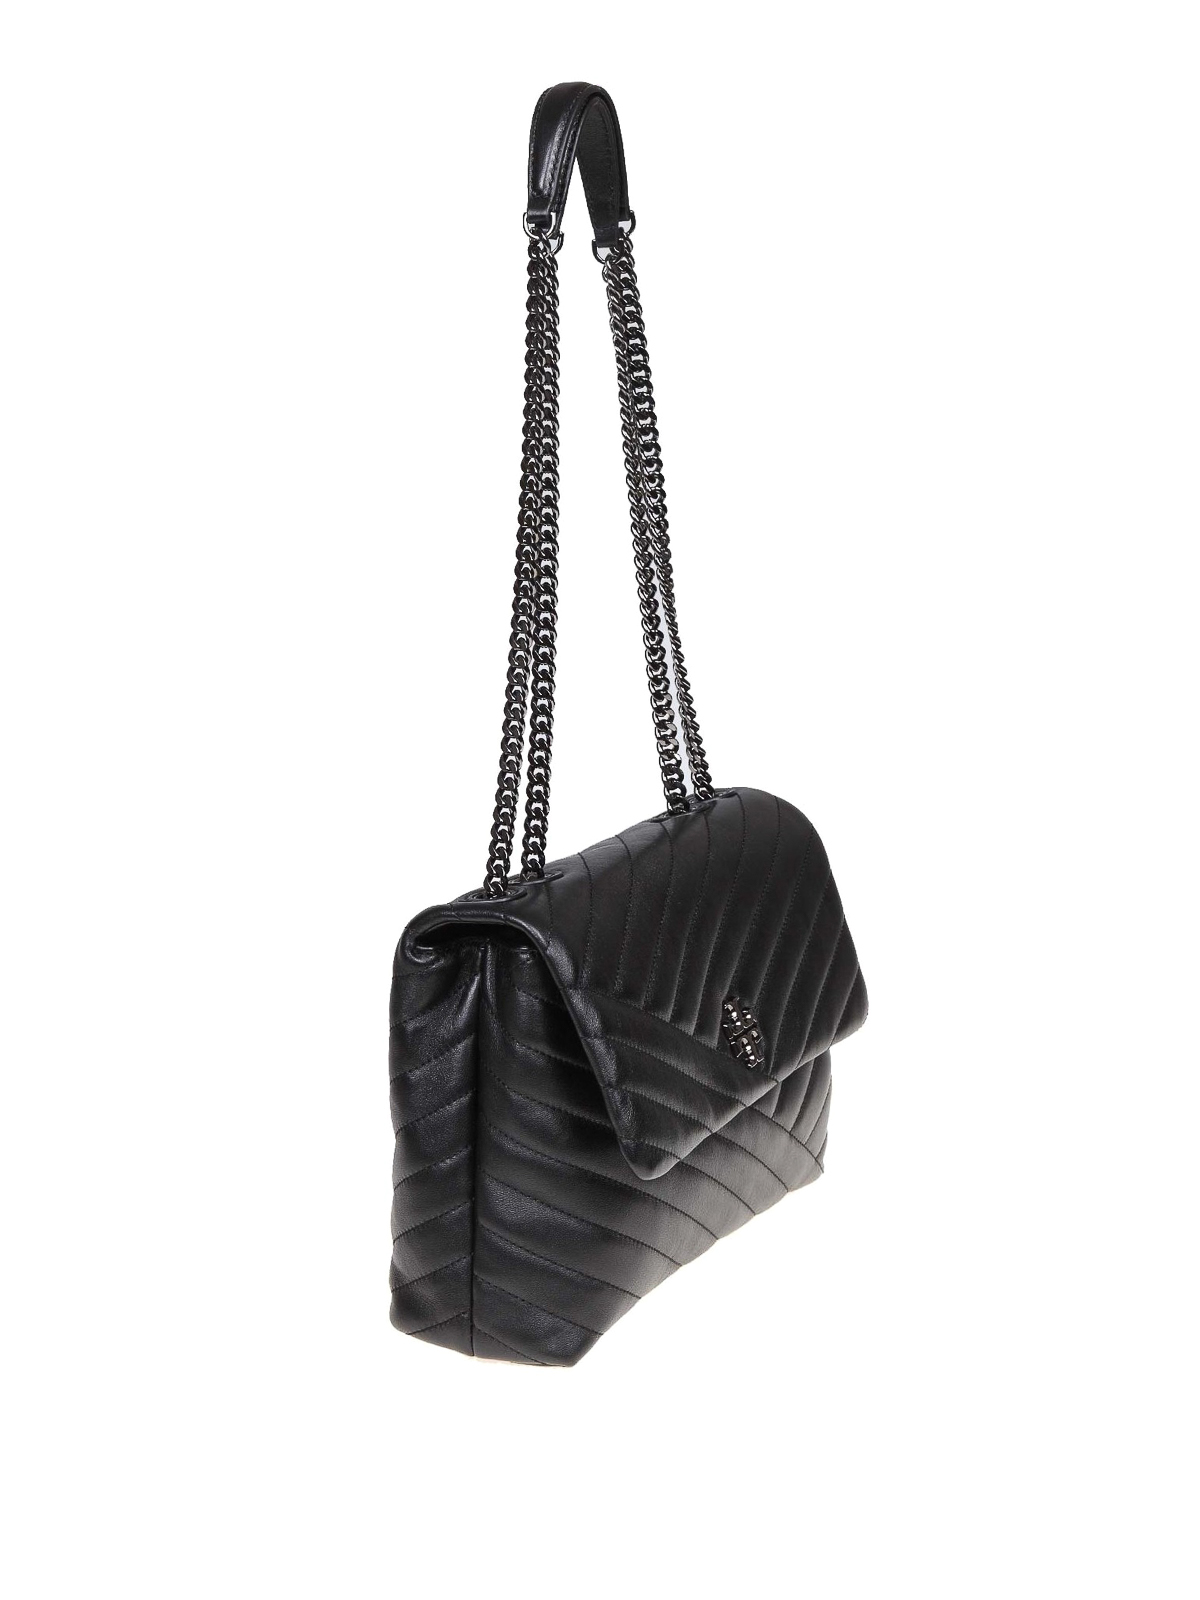 Tory Burch - Black Leather Kira Shoulder Bag